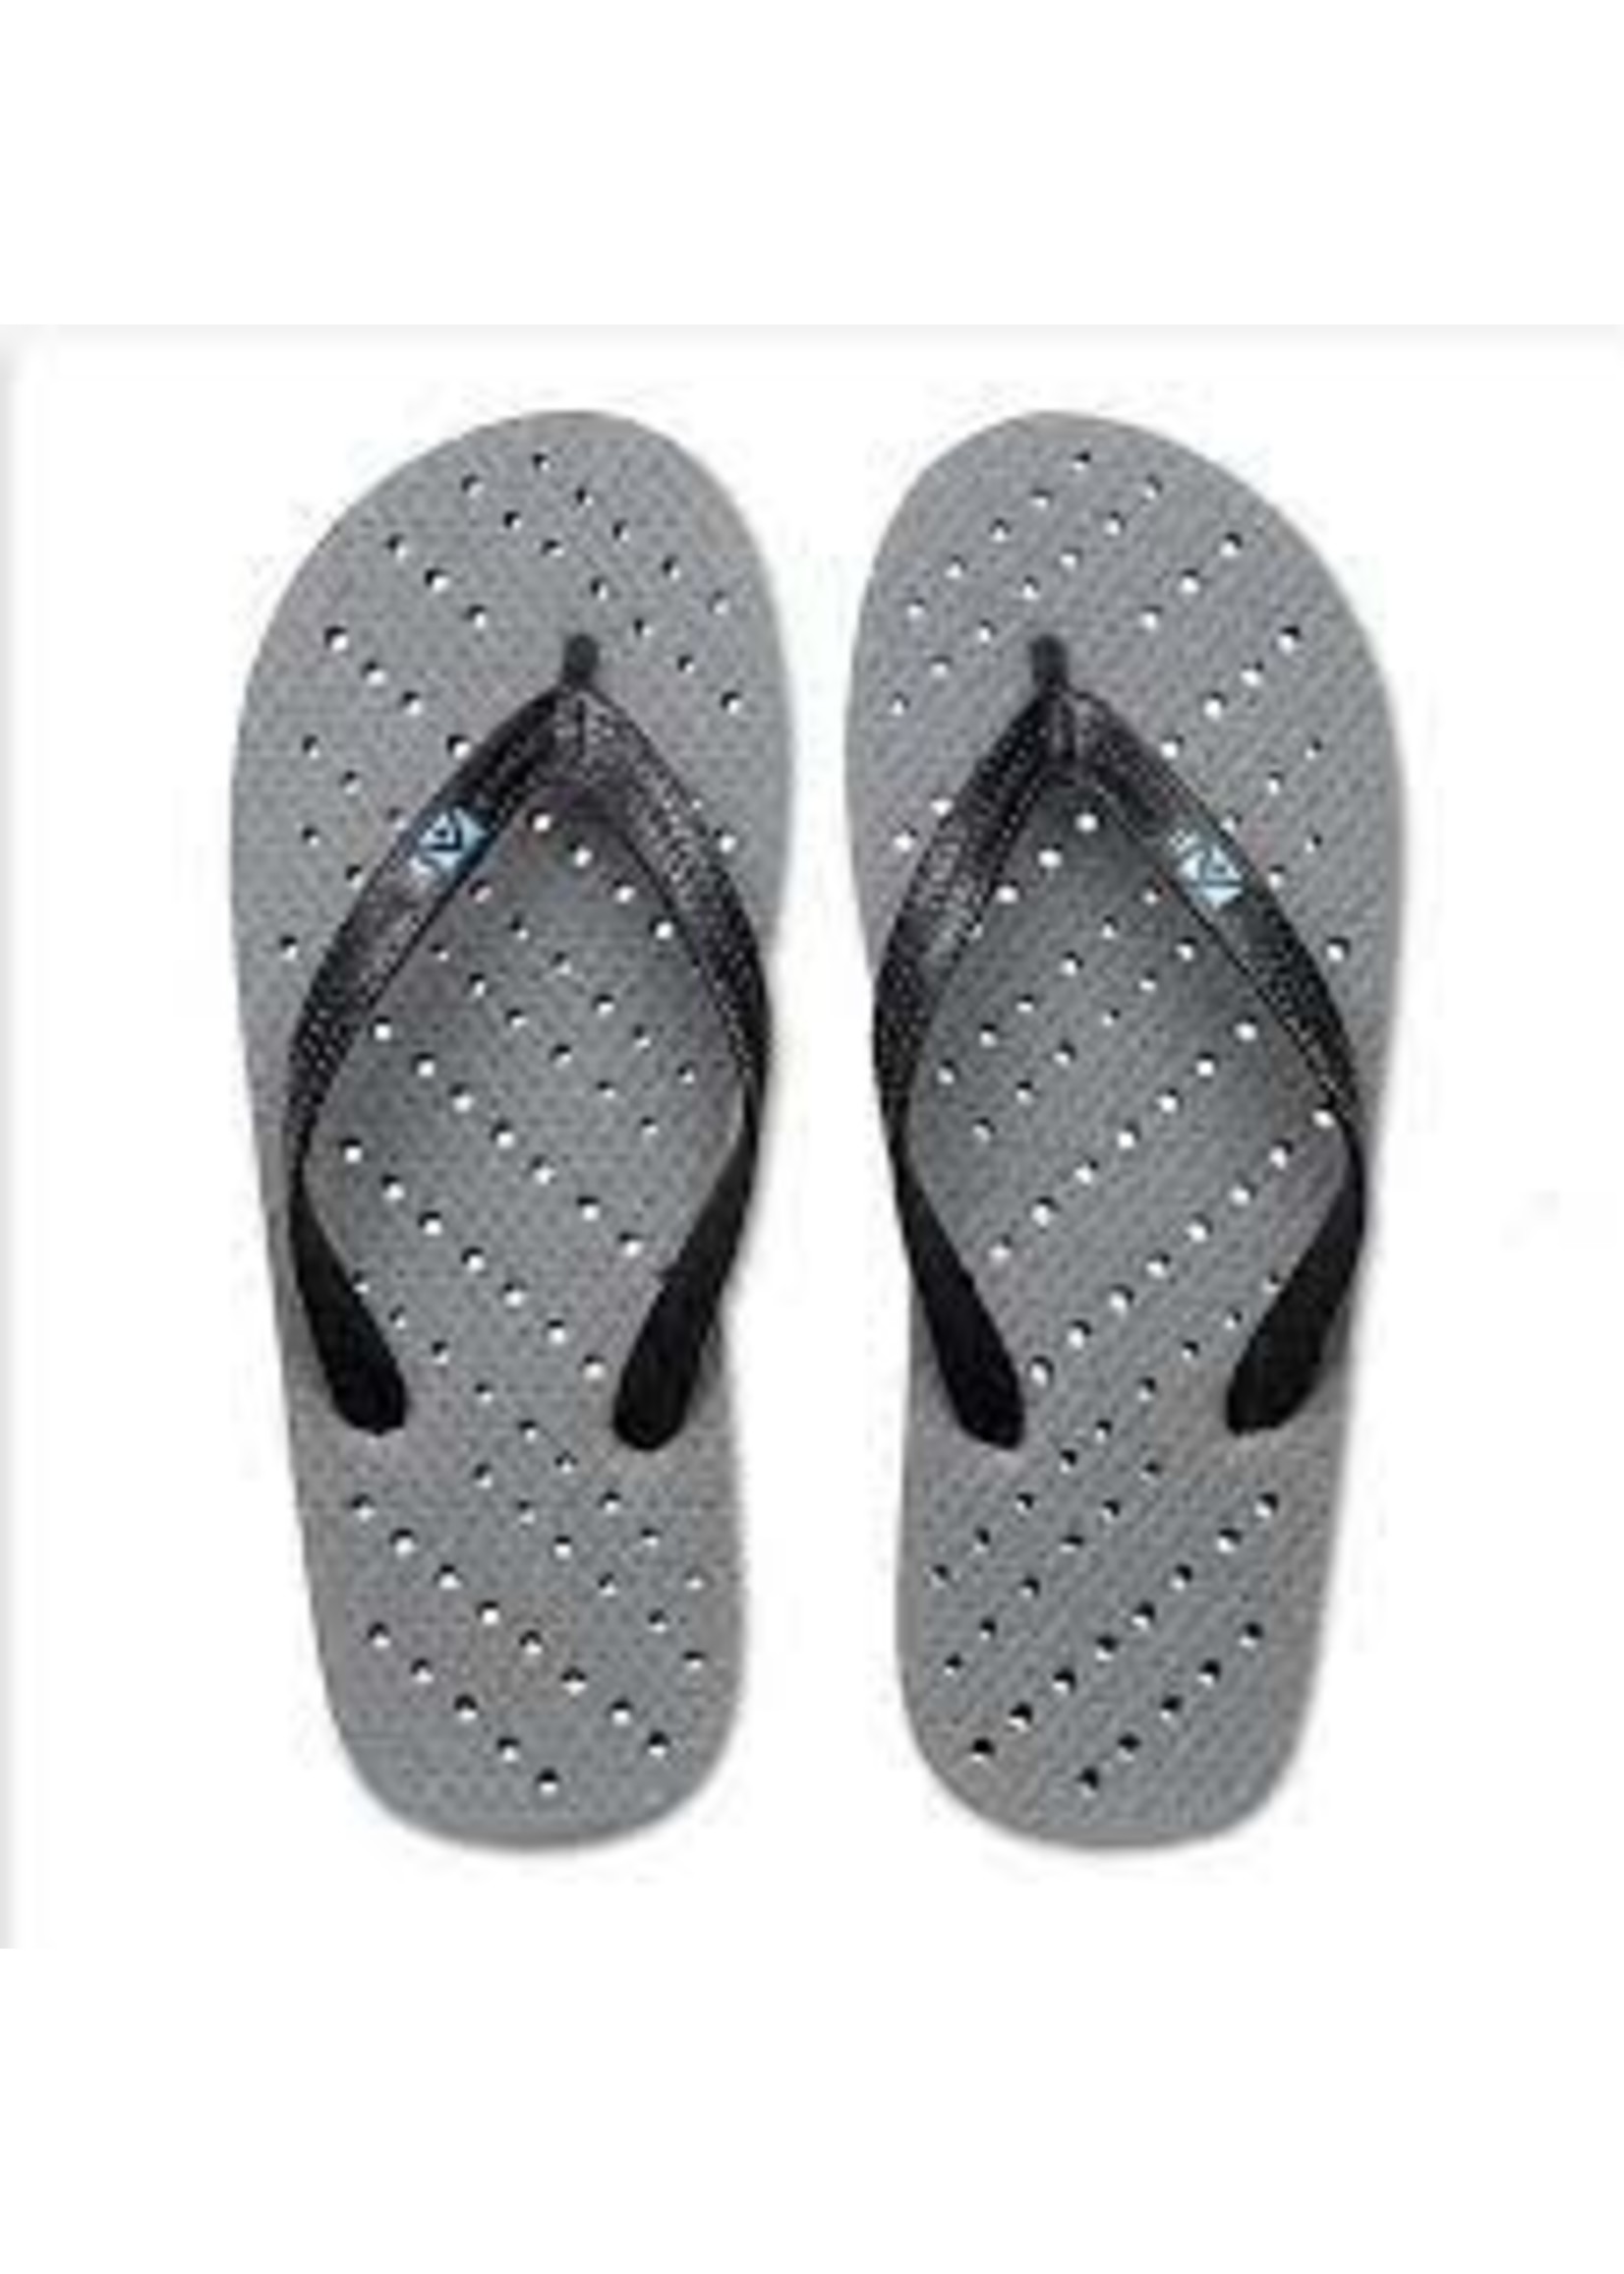 AquaFlop Aqua Flop Shower Shoes